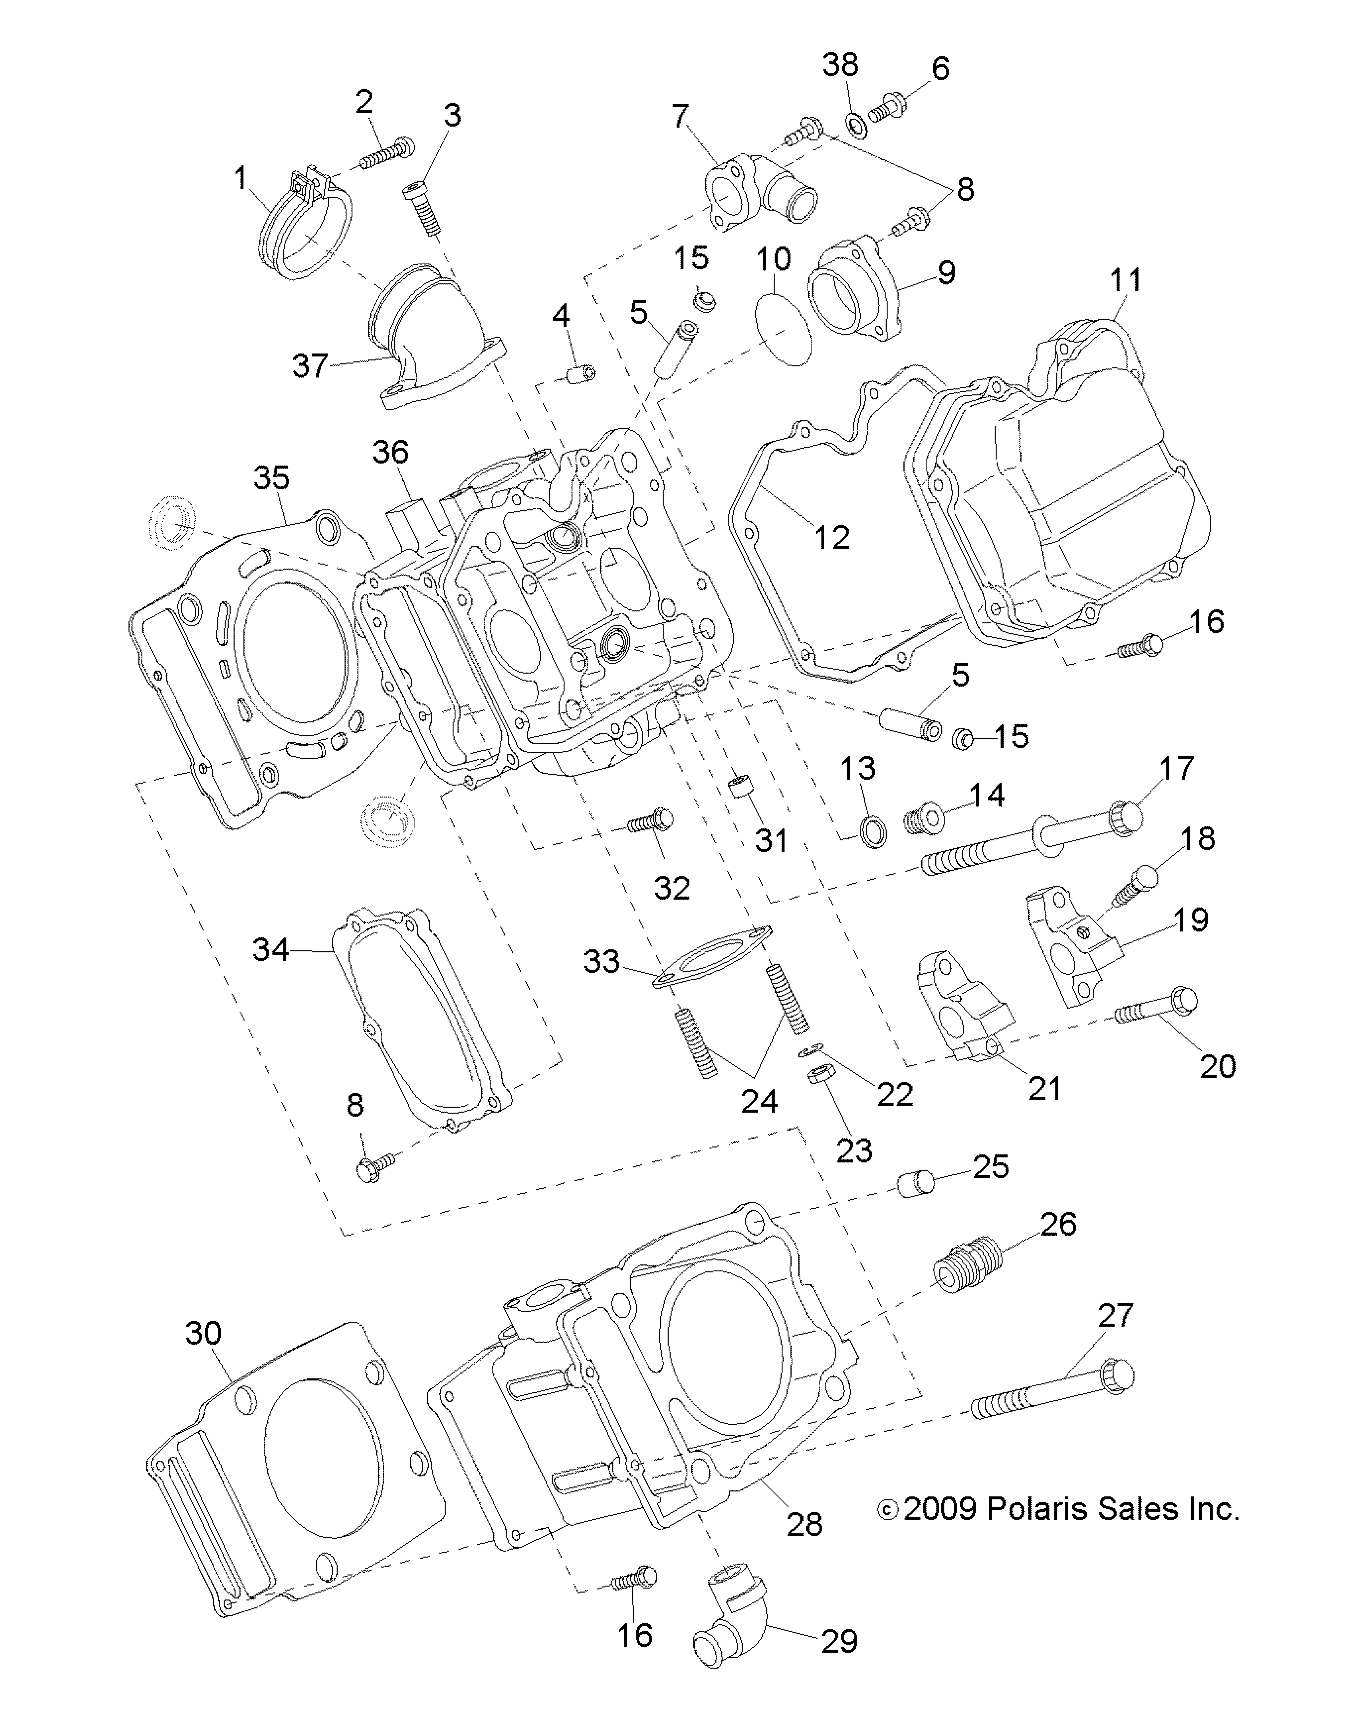 Foto diagrama Polaris que contem a peça 3088208